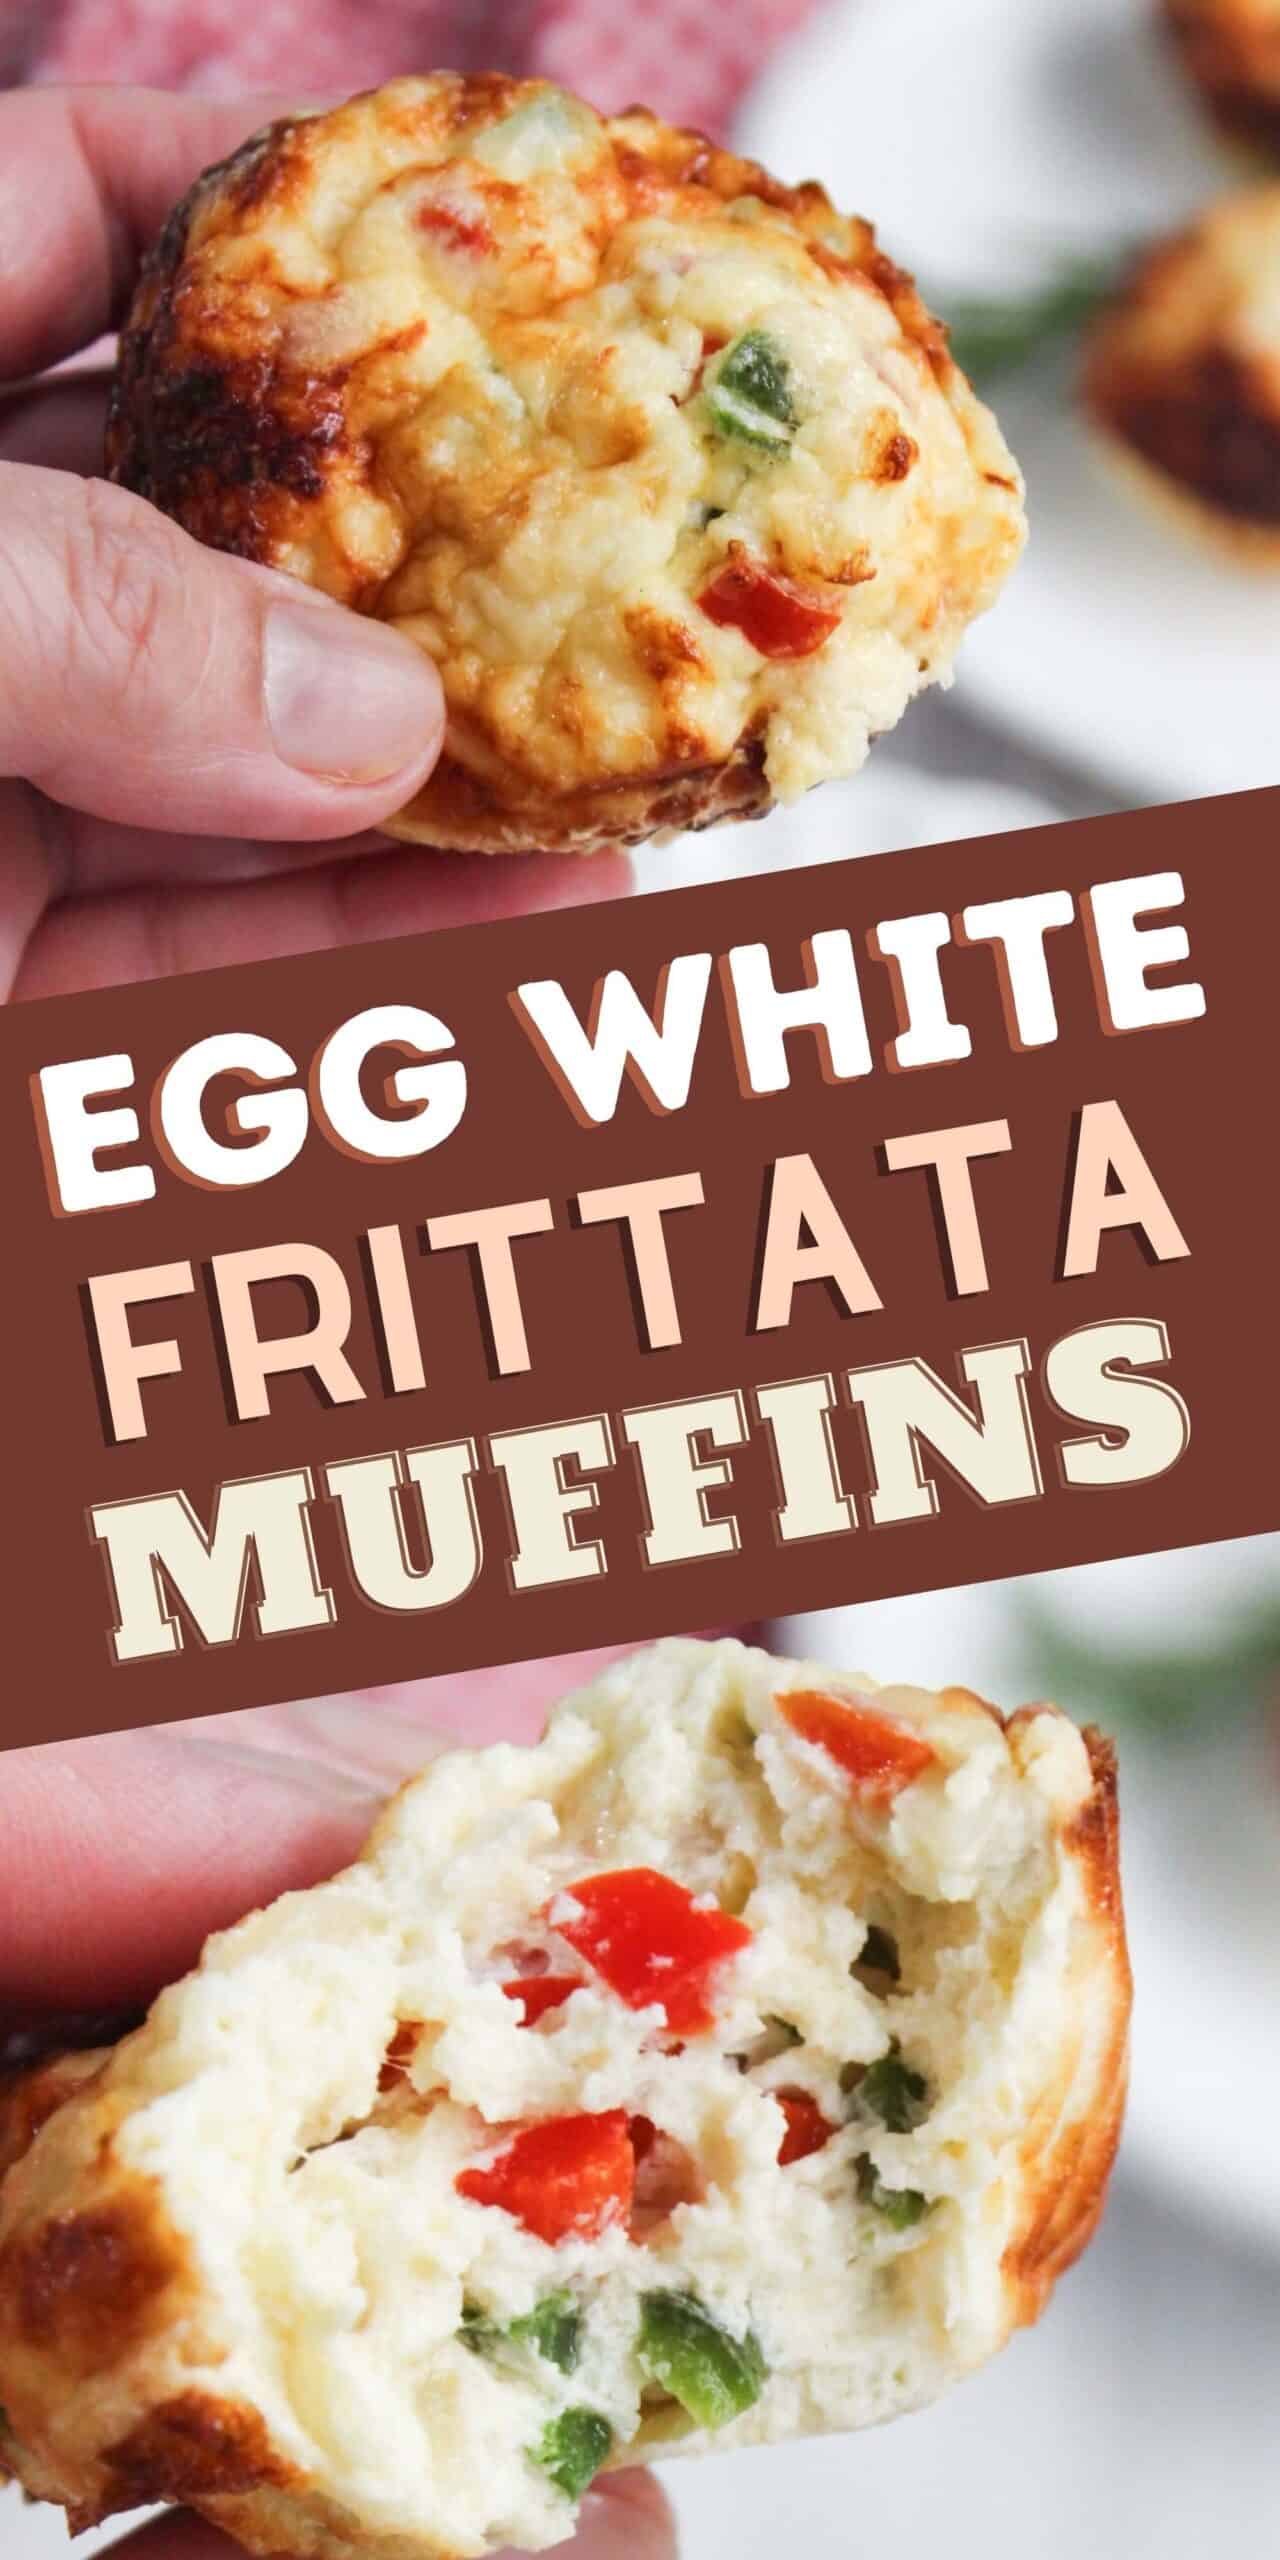 Egg white frittata muffins.